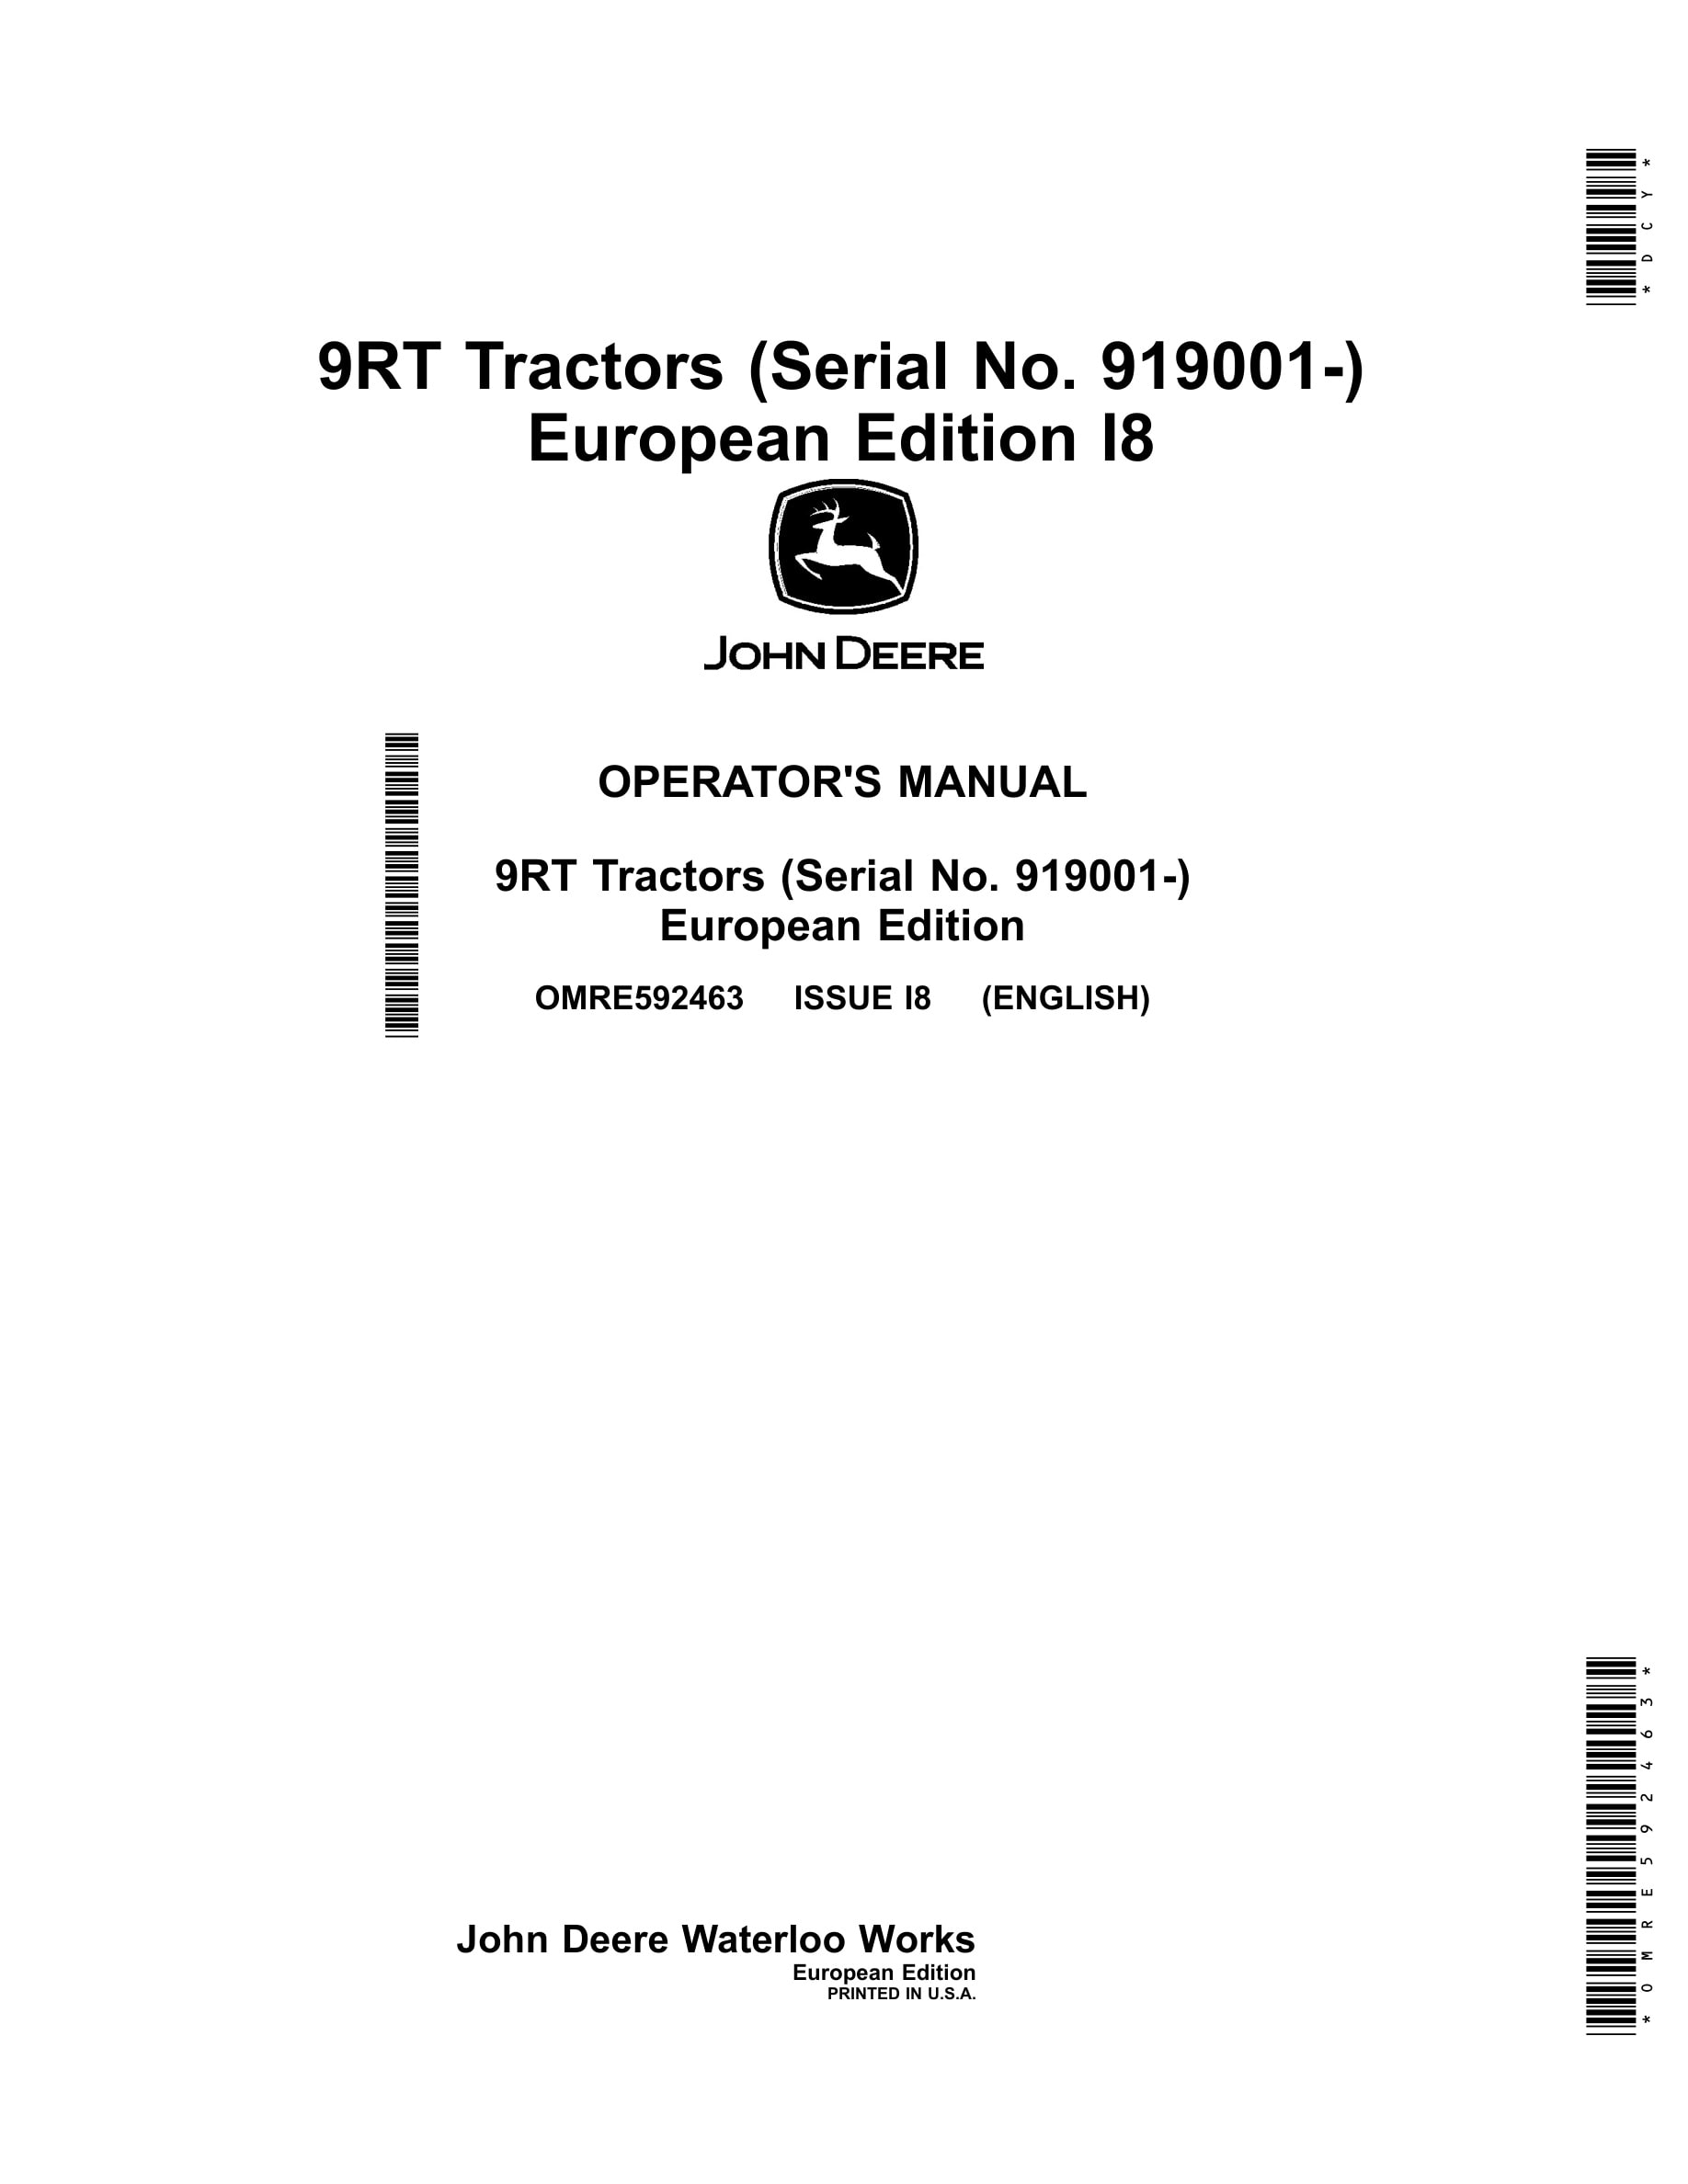 John Deere 9rt Tractors Operator Manuals OMRE592463-1